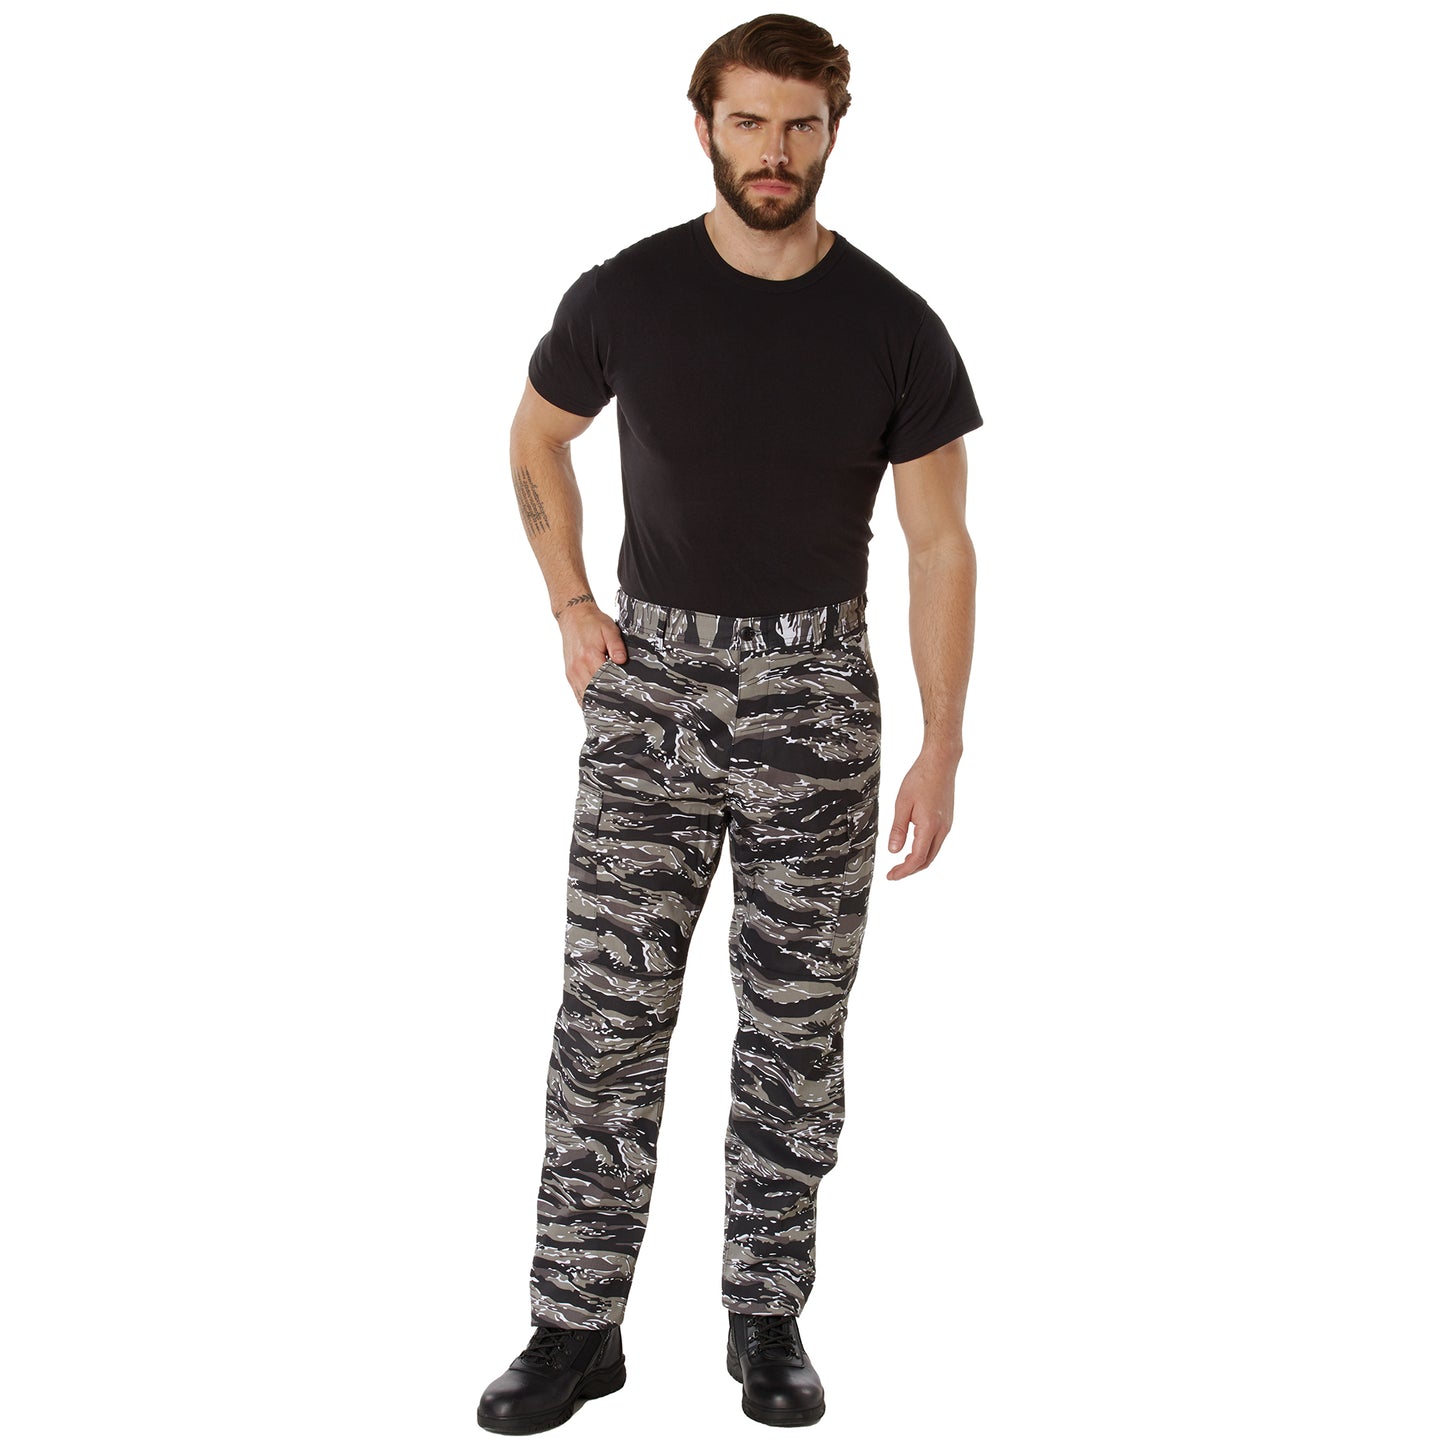 Rothco Color Camo Tactical BDU Pants - Urban Tiger Stripe Camo